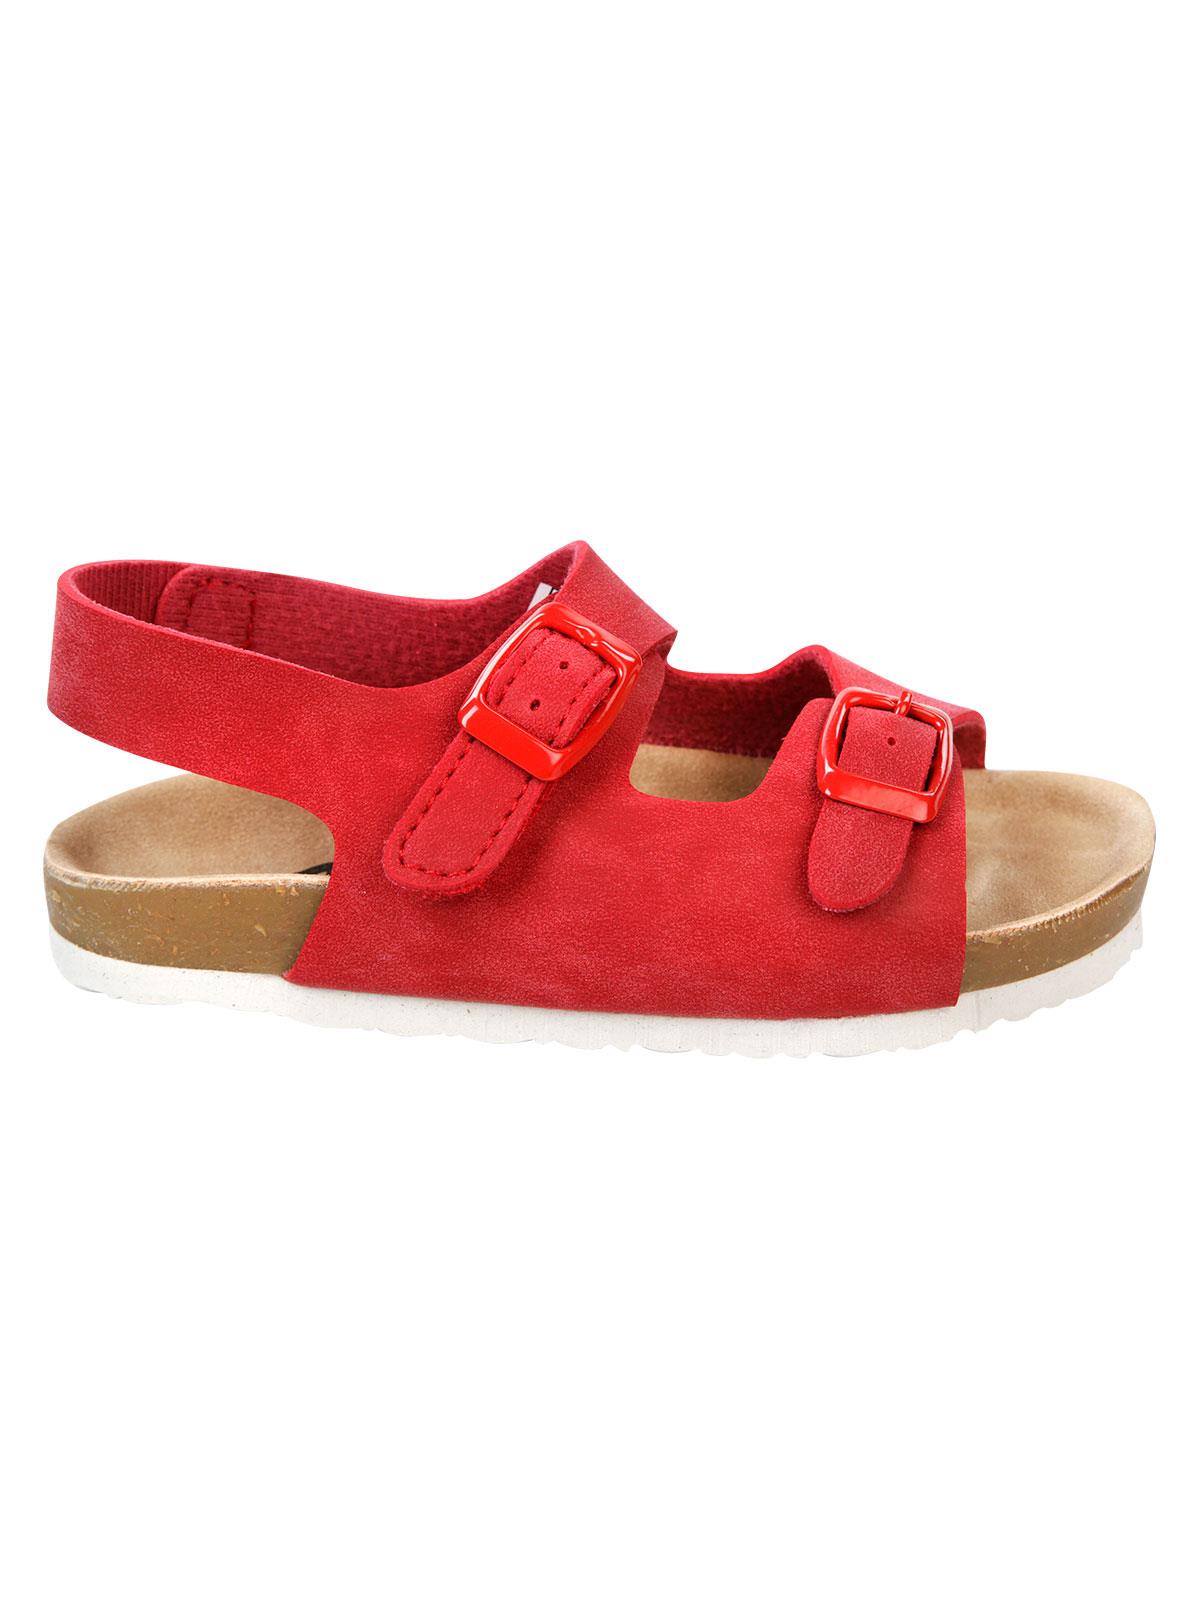 Civil Erkek Çocuk Sandalet 26-30 Numara Kırmızı